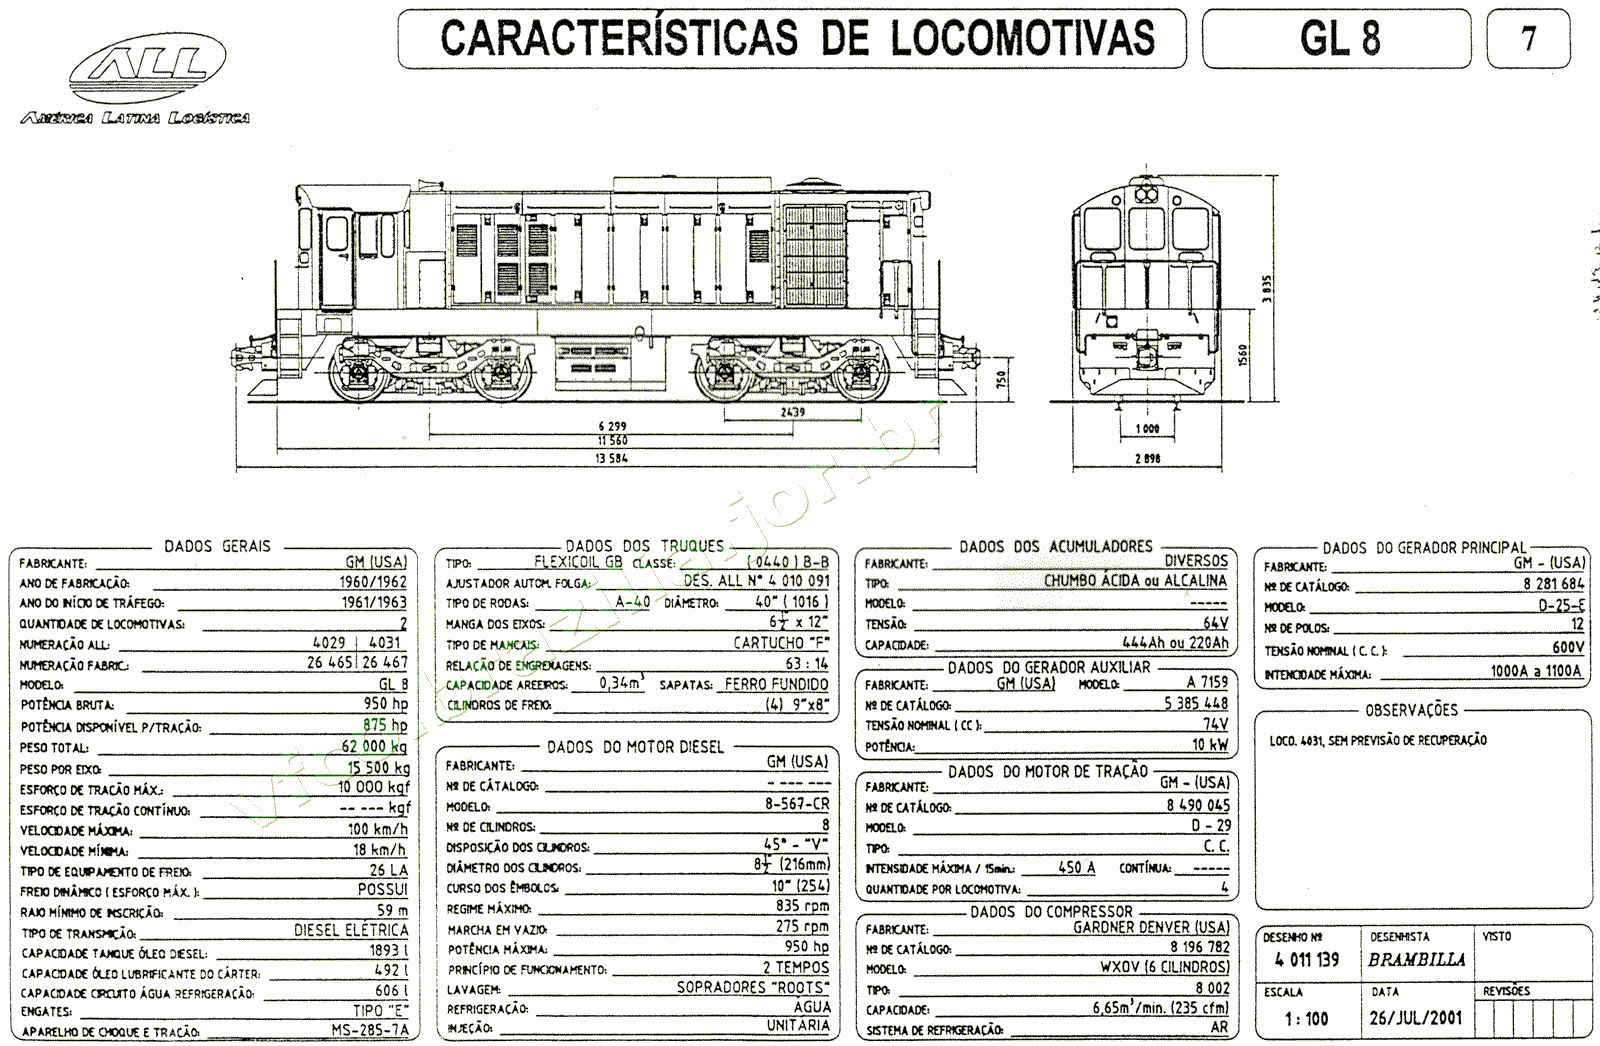 Planta e especificações das Locomotivas GL8 nº 4029-4031 da ferrovia ALL